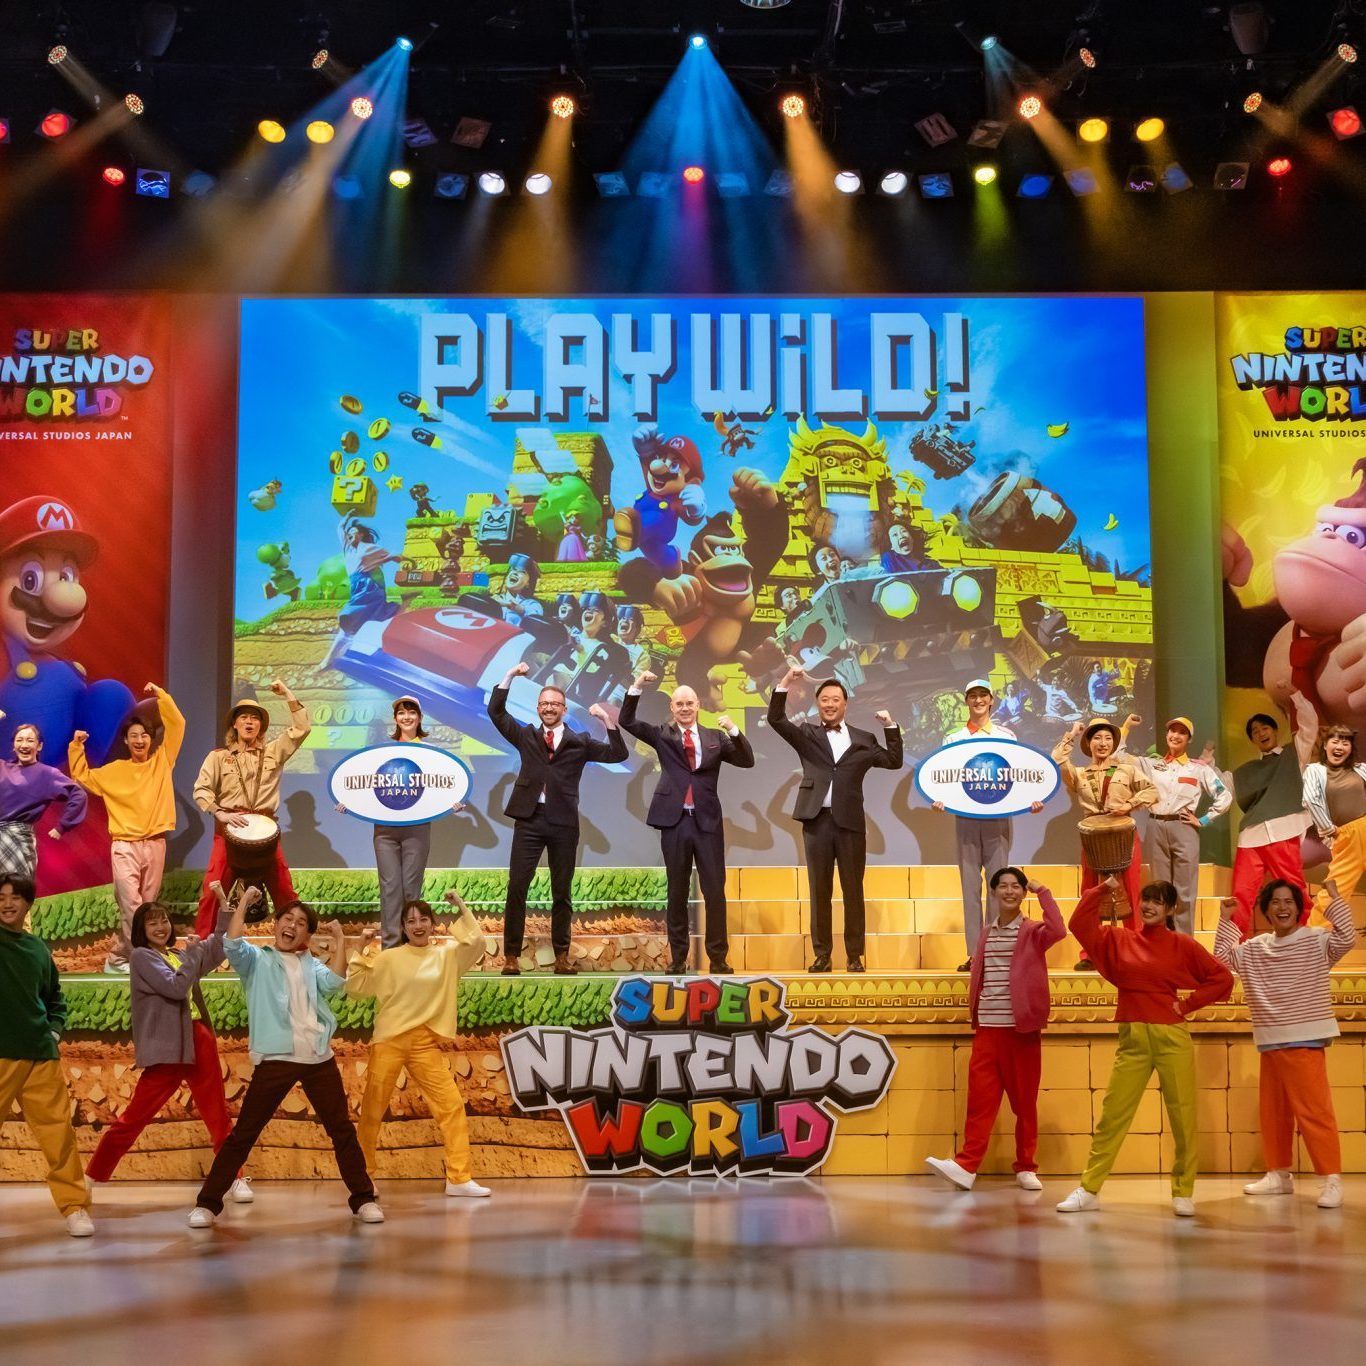 スーパーニンテンドーワールドジャパン（Super Nintendo World Japan）にドンキーコンカントリー（Donkey Kong Country）が登場する予定です。